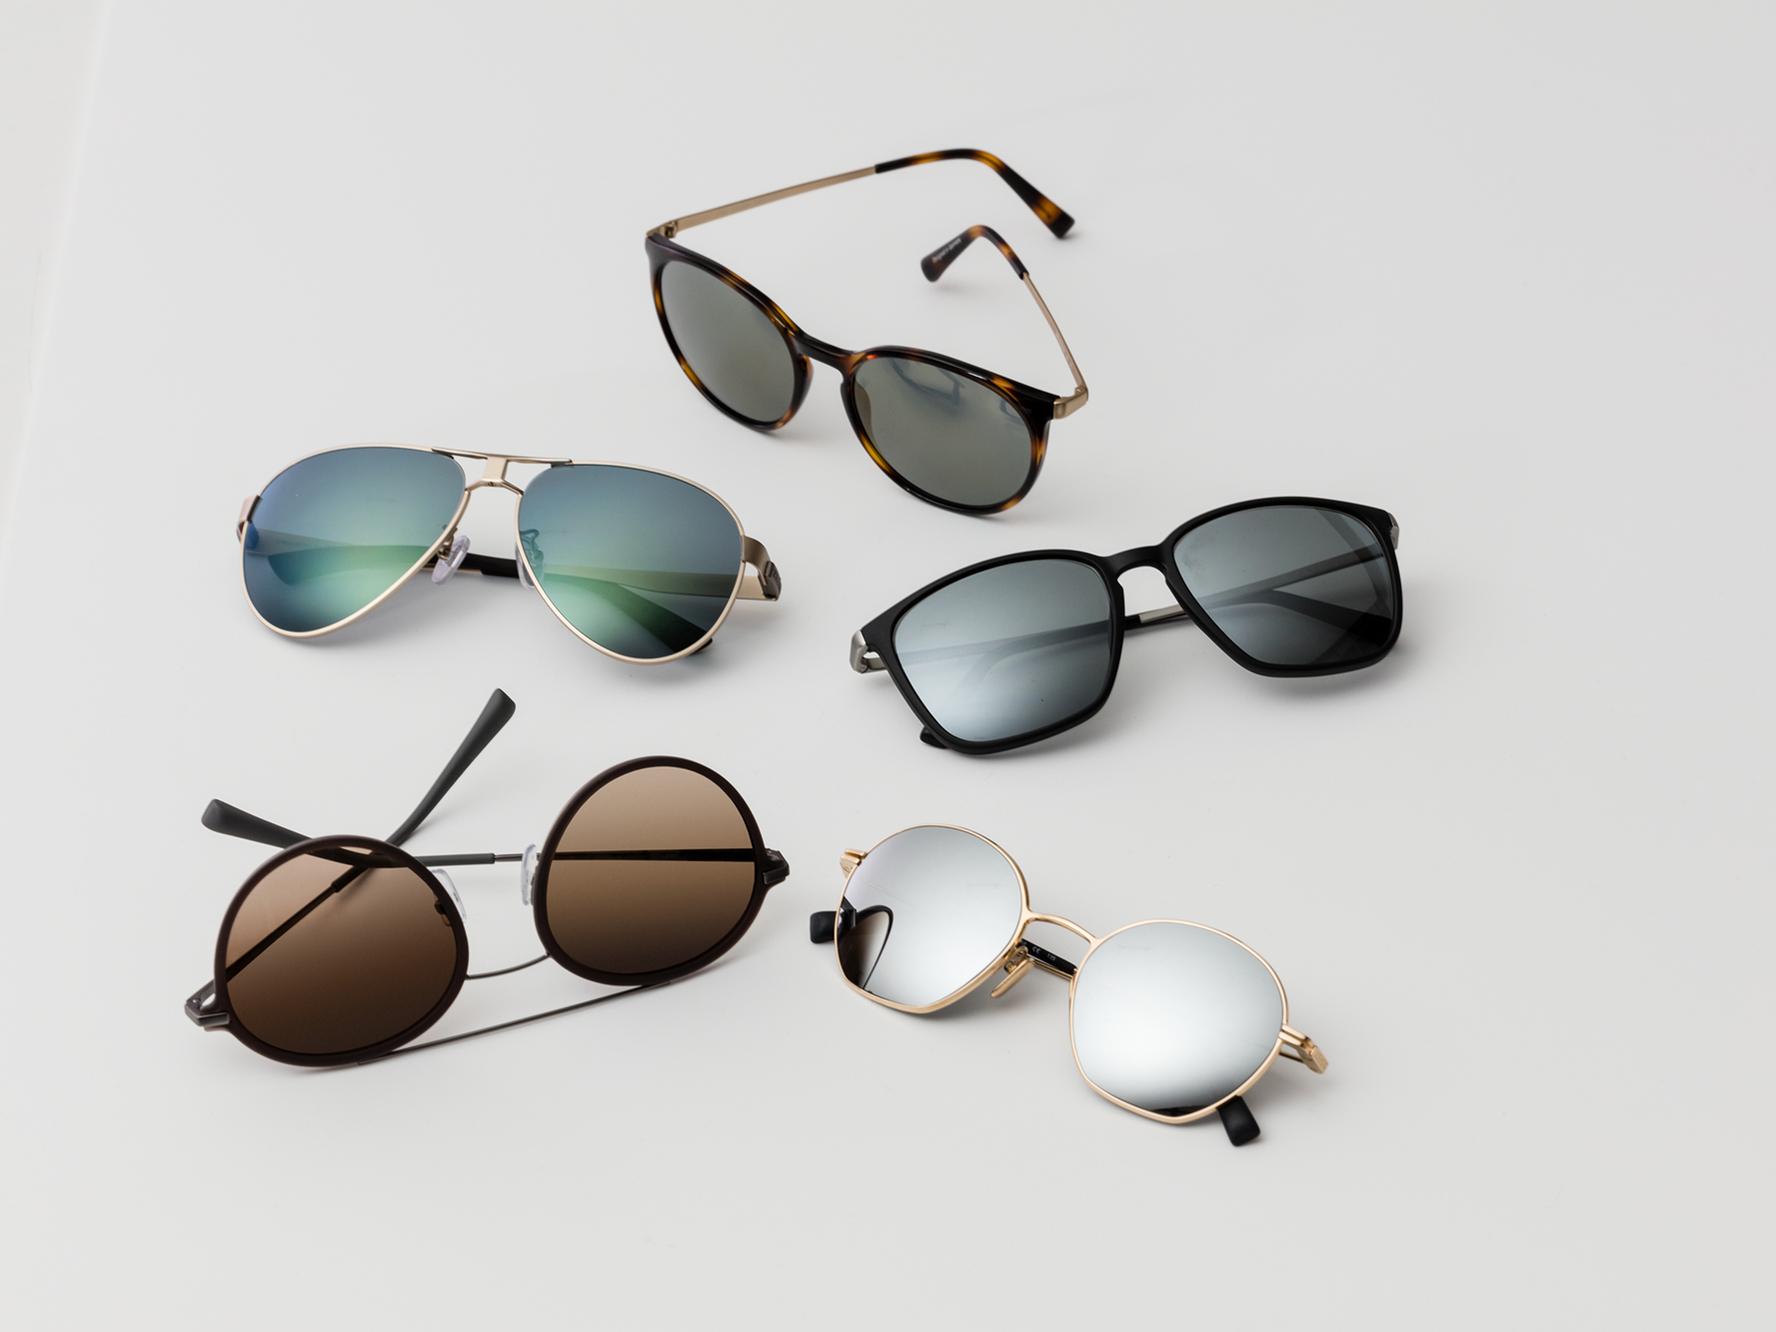 Pięć par okularów przeciwsłonecznych z klasycznym barwieniem chroniącym przed słońcem – światło umiarkowane i mocne.